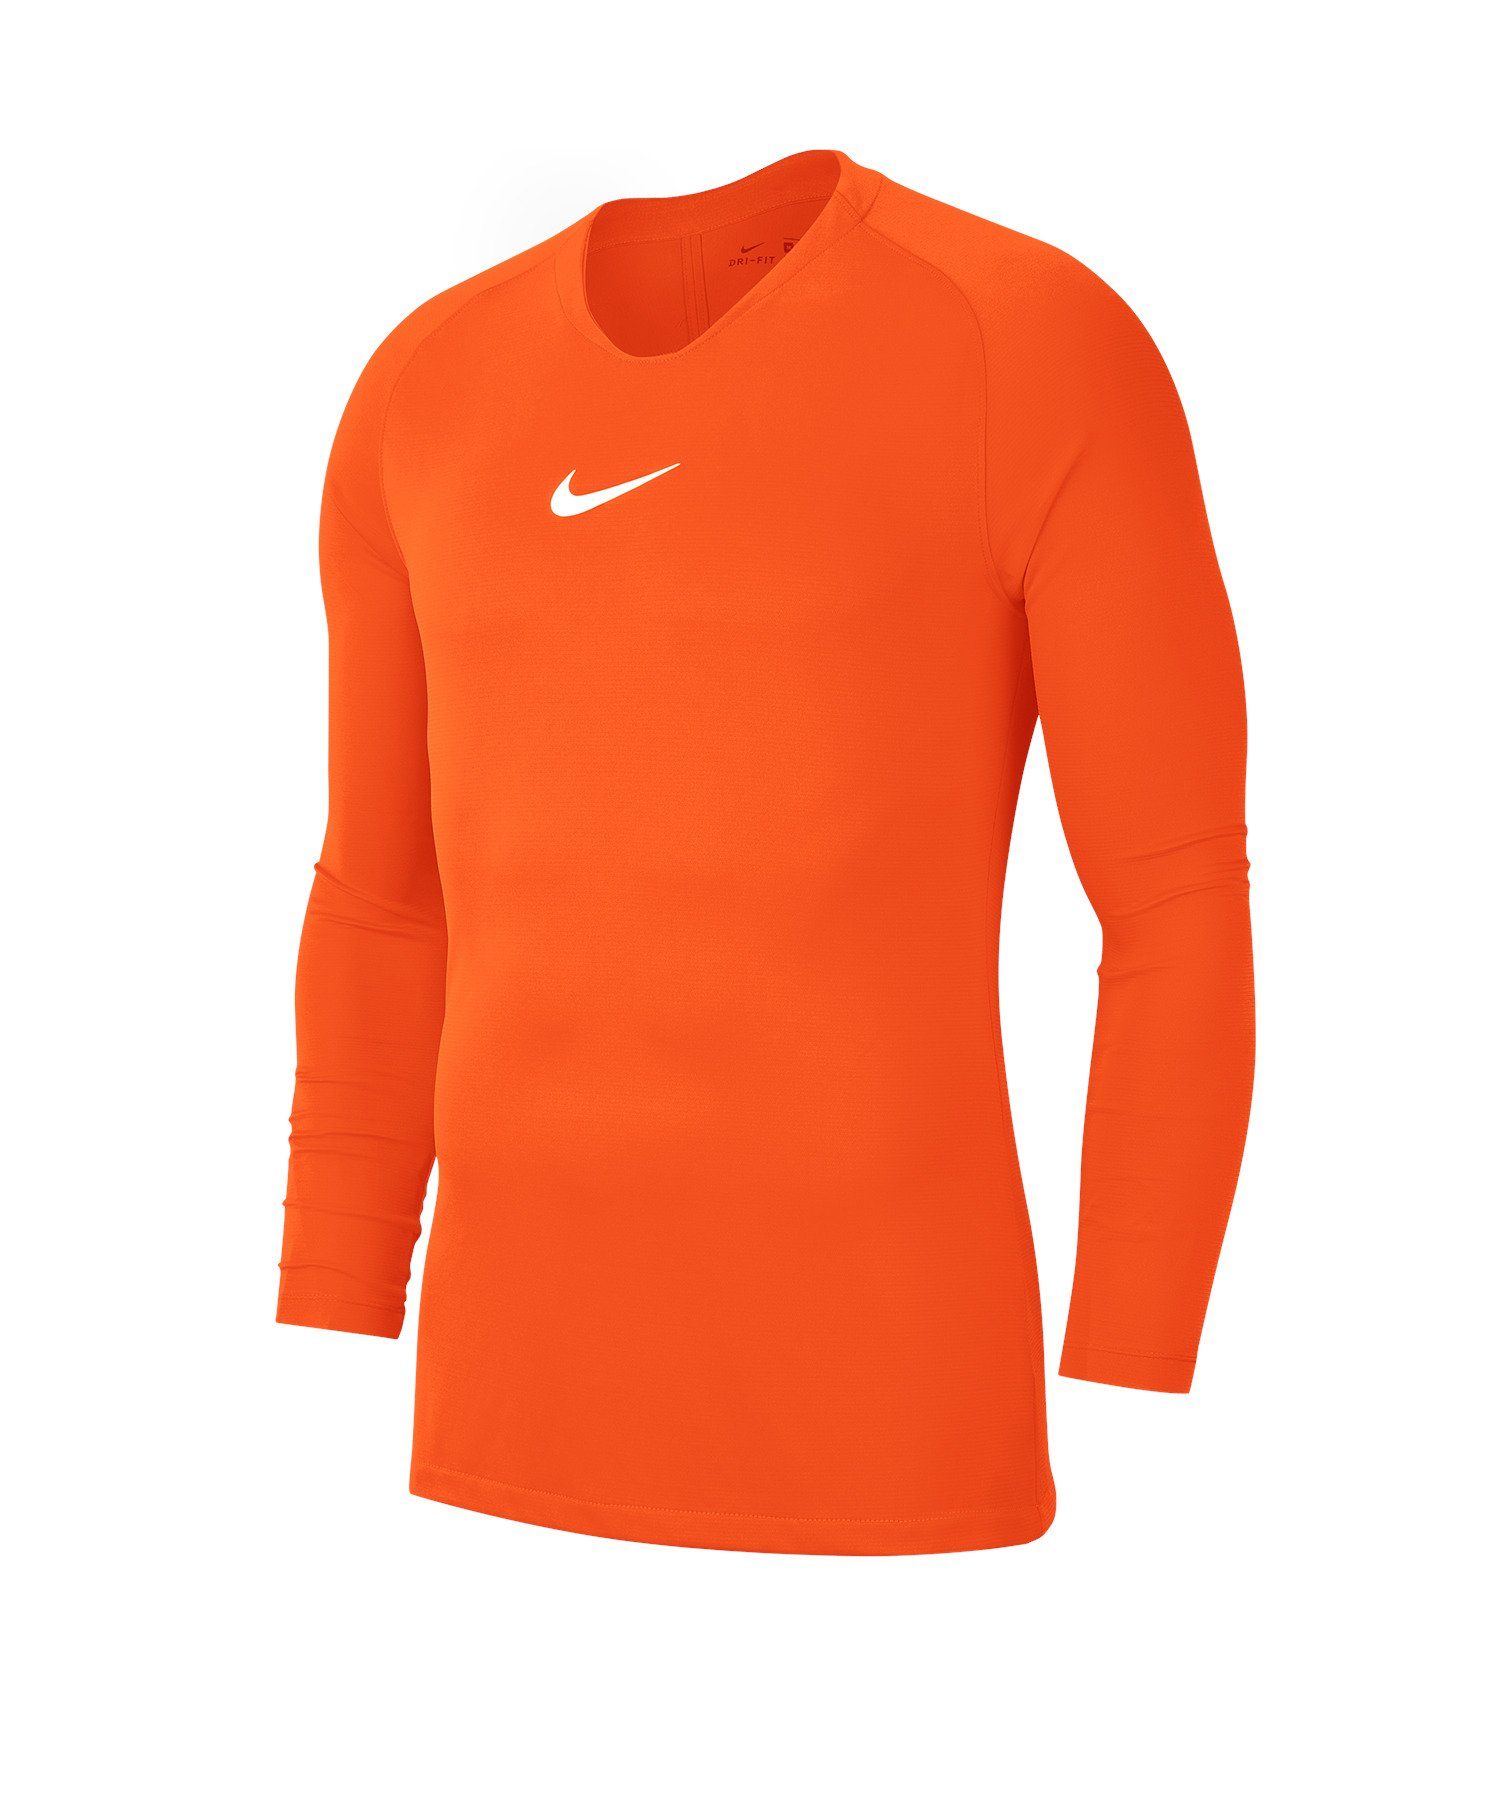 Daumenöffnung Nike Layer orange Top Kids Park First Funktionsshirt